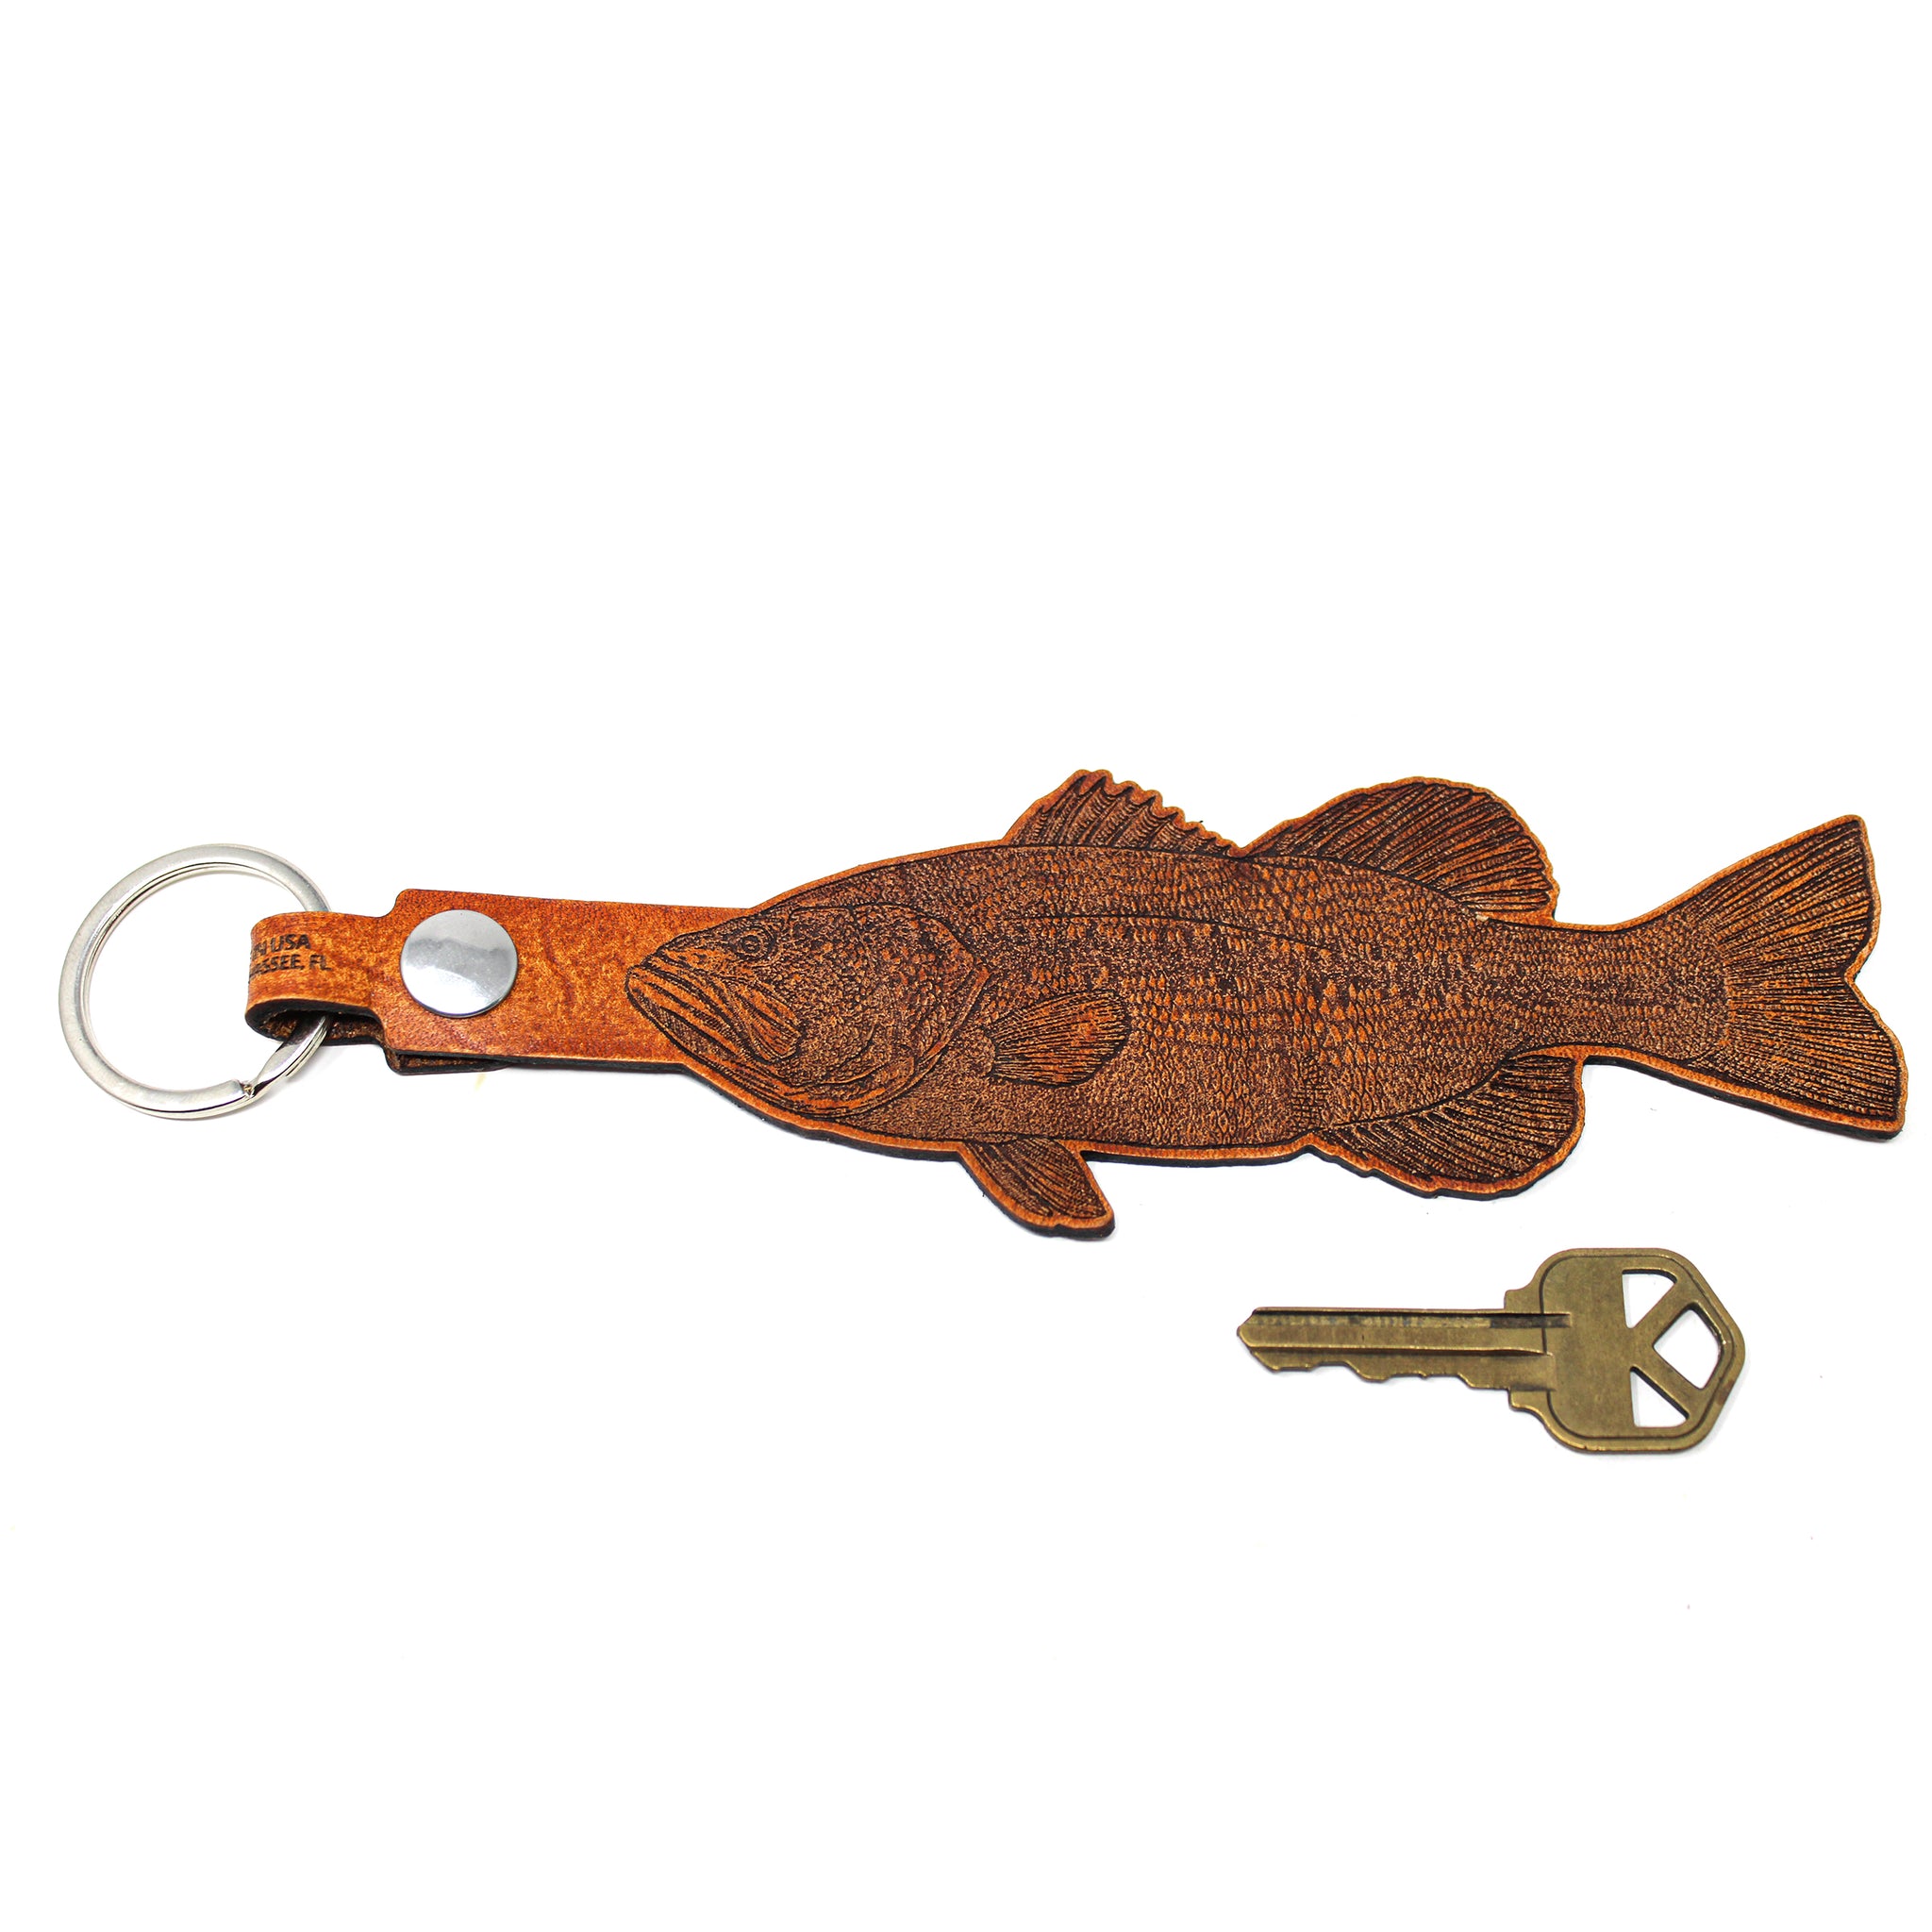 Leather Keychain - Large Largemouth Bass Keychain